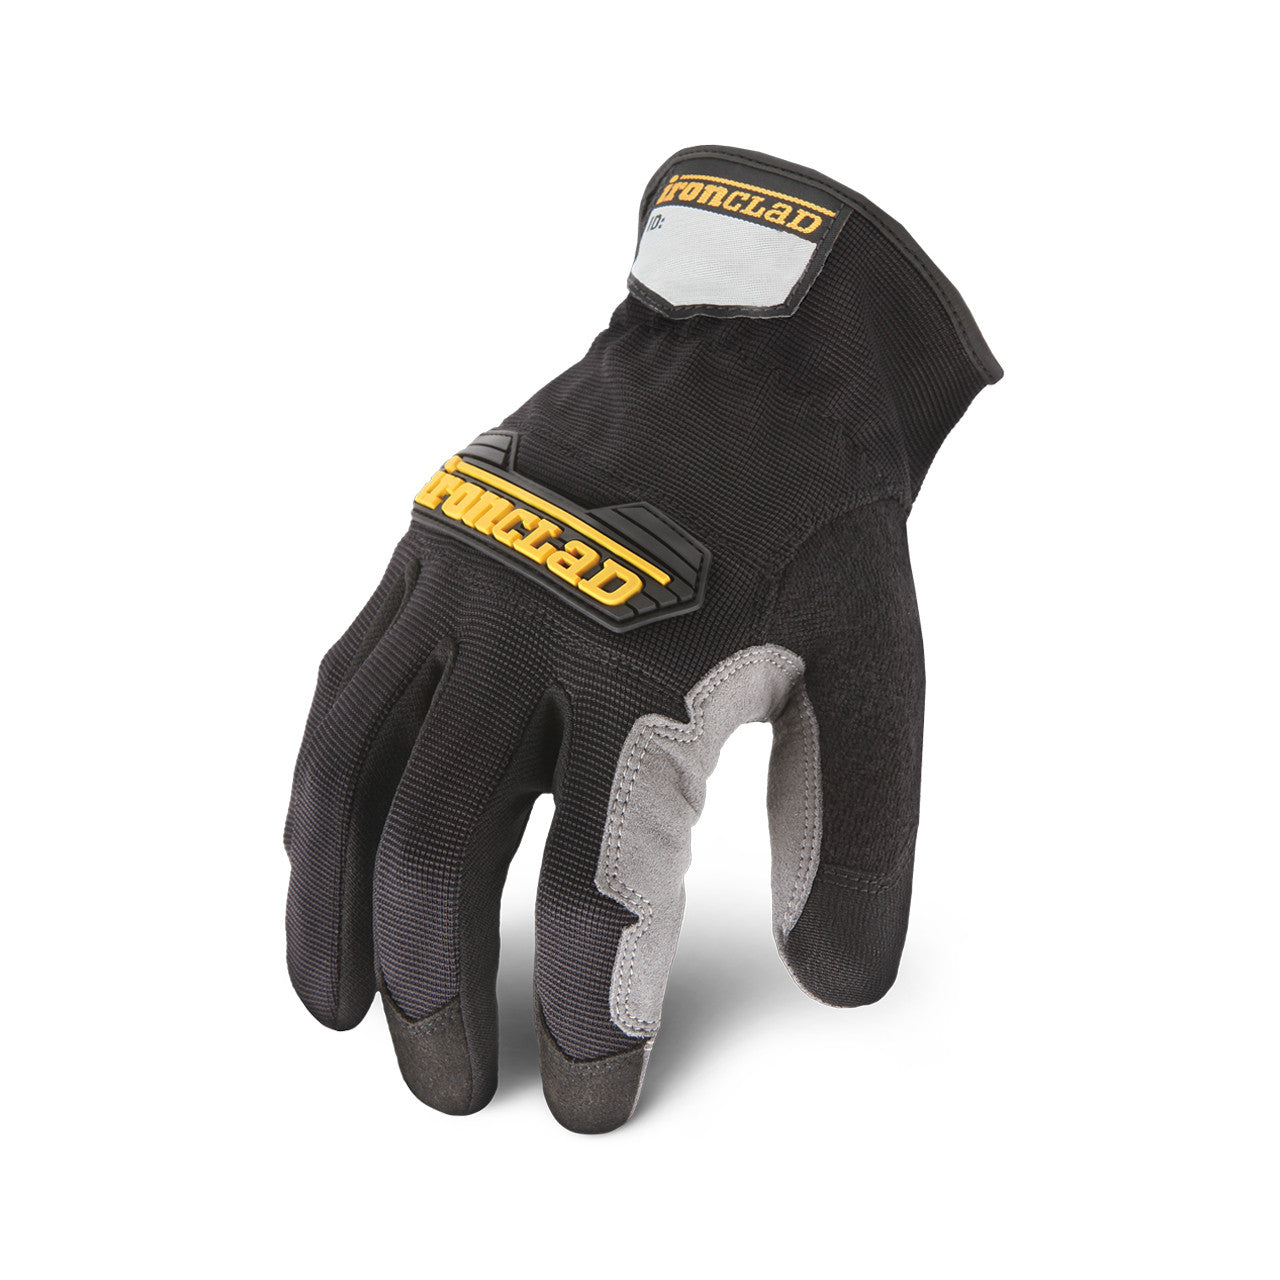 Ironclad Workforce Glove Black-eSafety Supplies, Inc